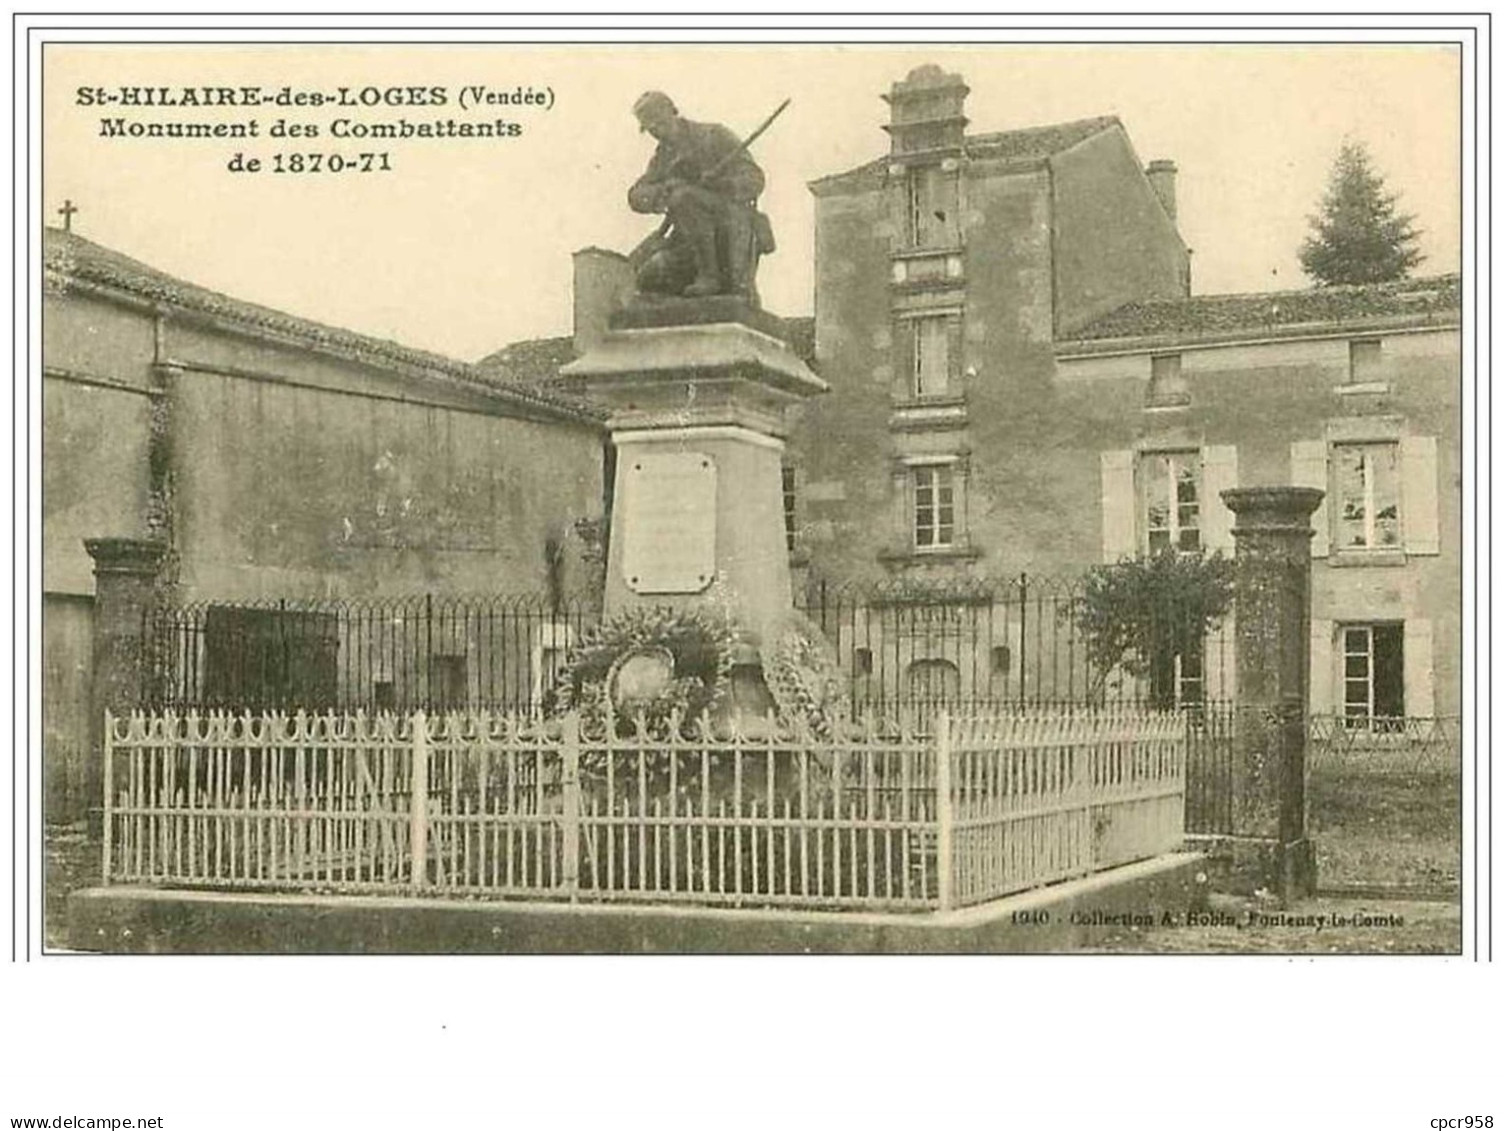 85.SAINT-HILAIRE-DES-LOGE S.MONUMENT DES COMBATTANTS DE 1870-71 - Saint Hilaire Des Loges